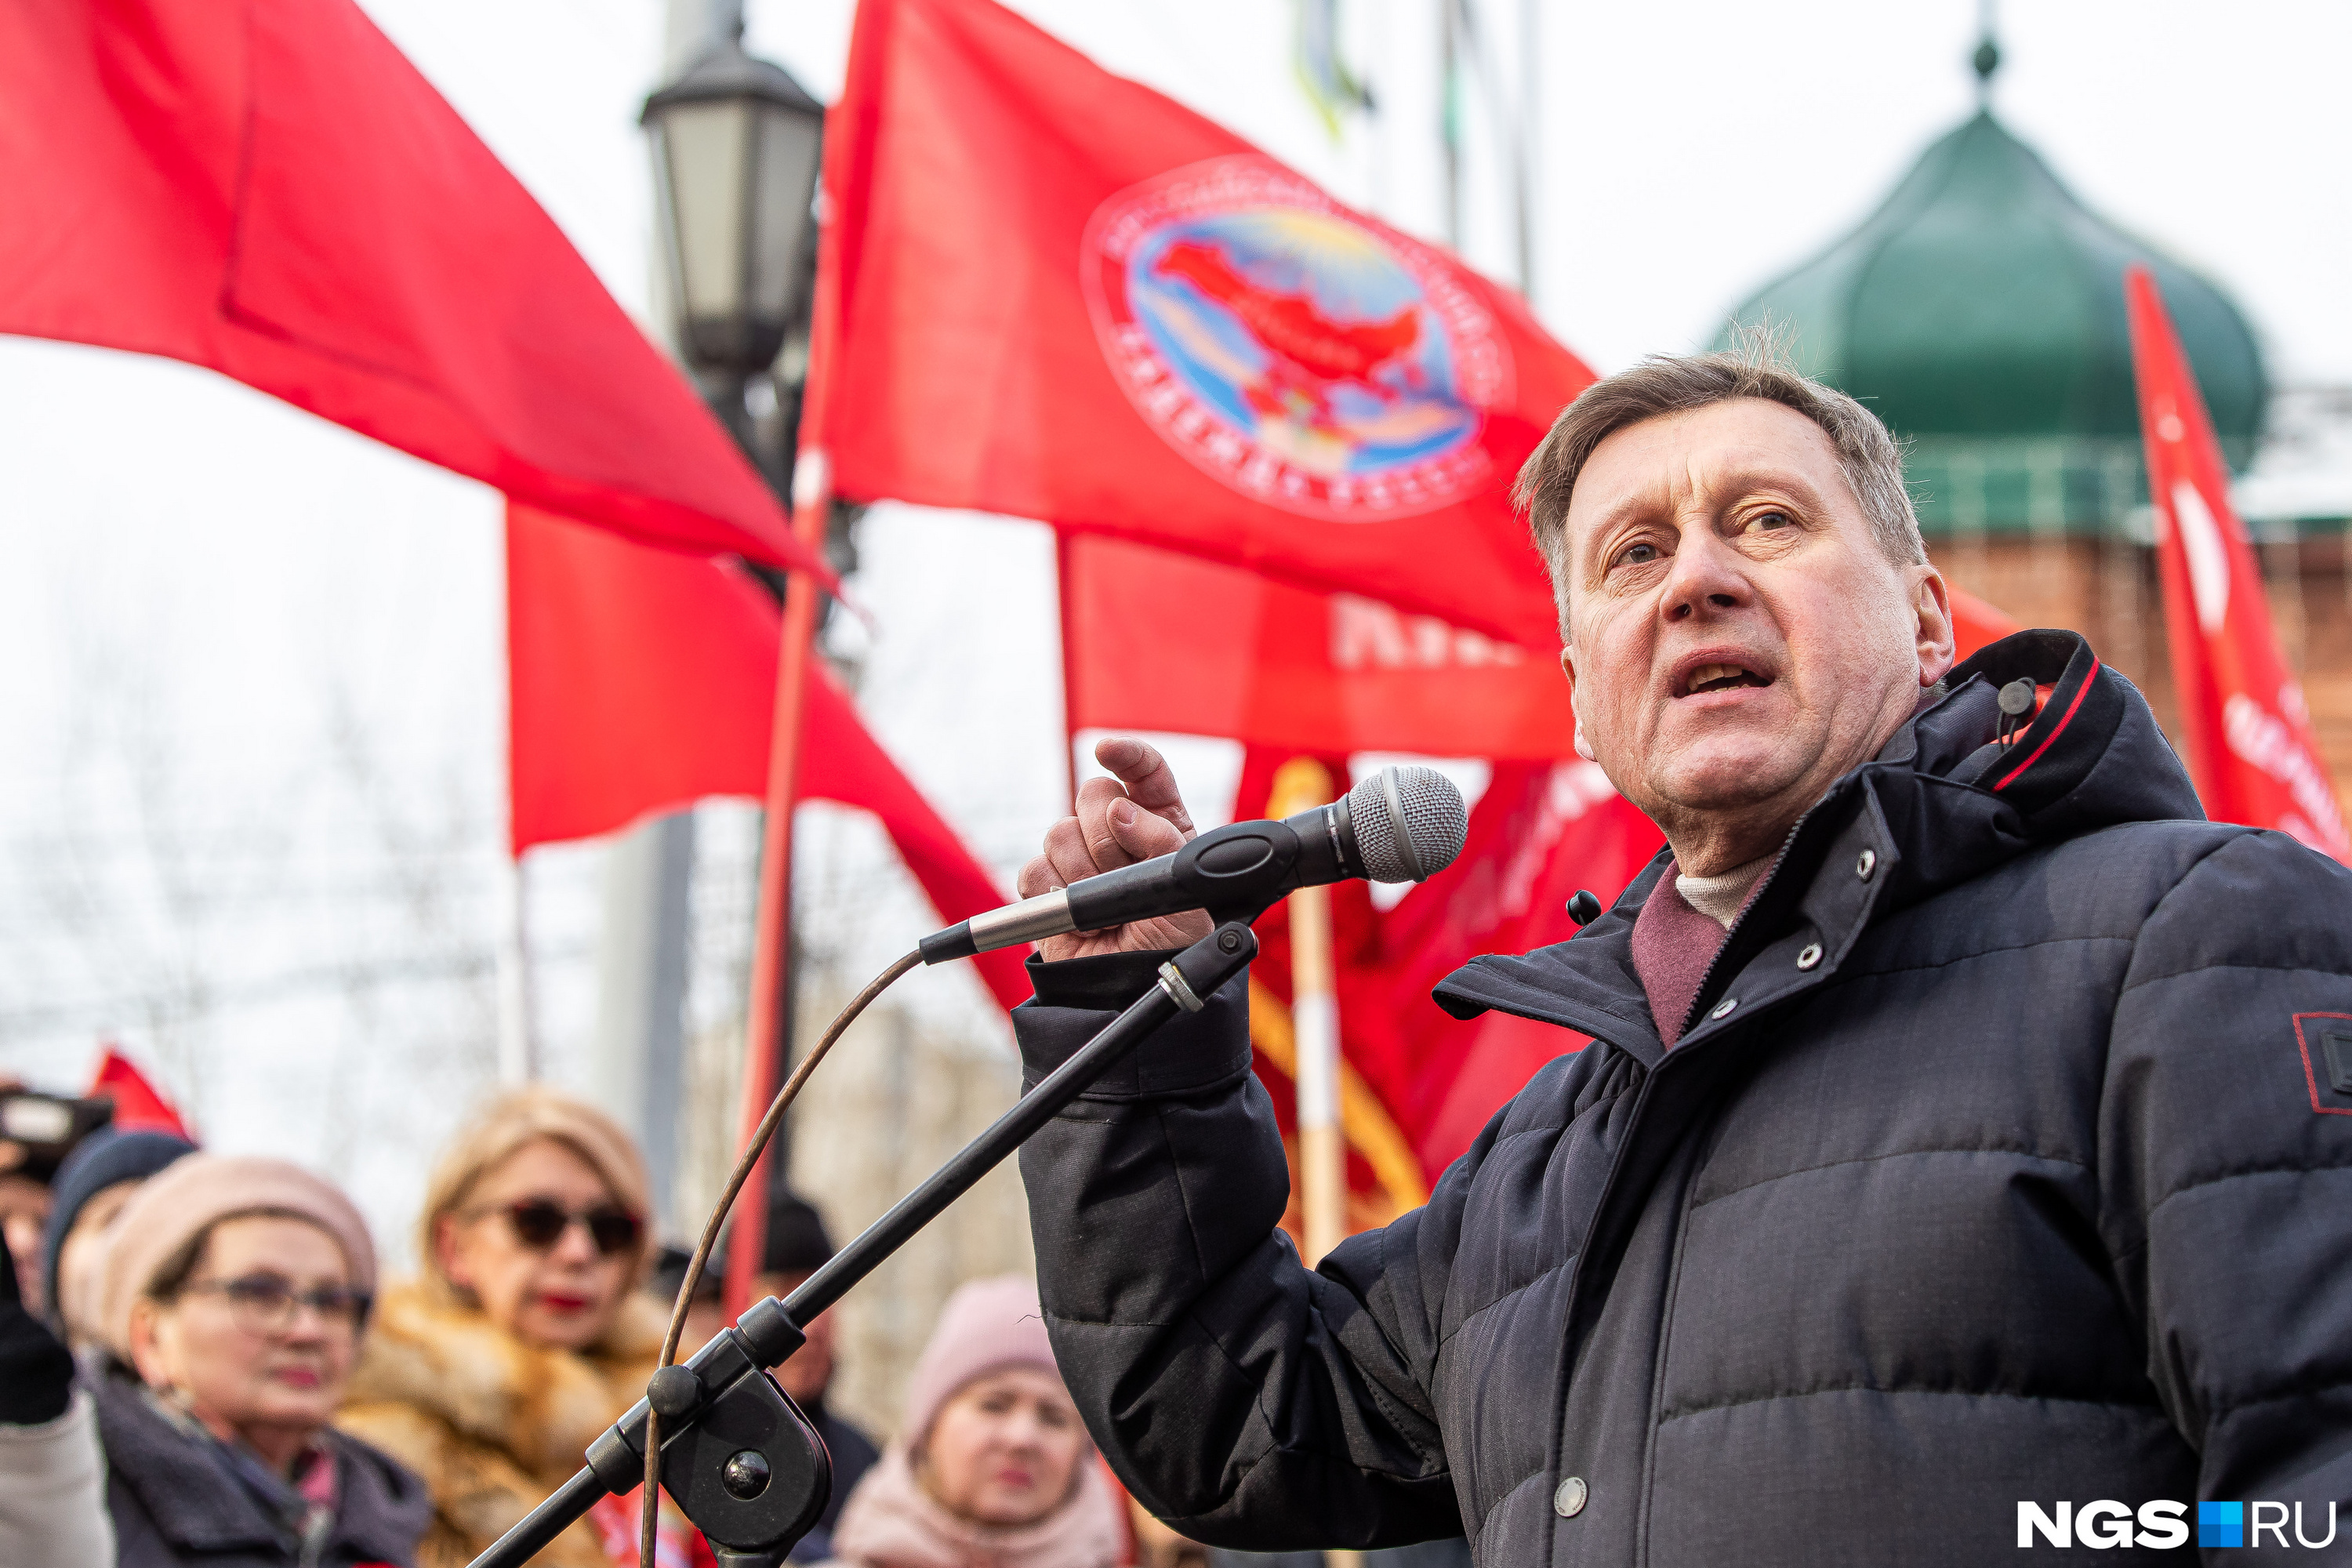 Во главе шествия был мэр Новосибирска Анатолий Локоть